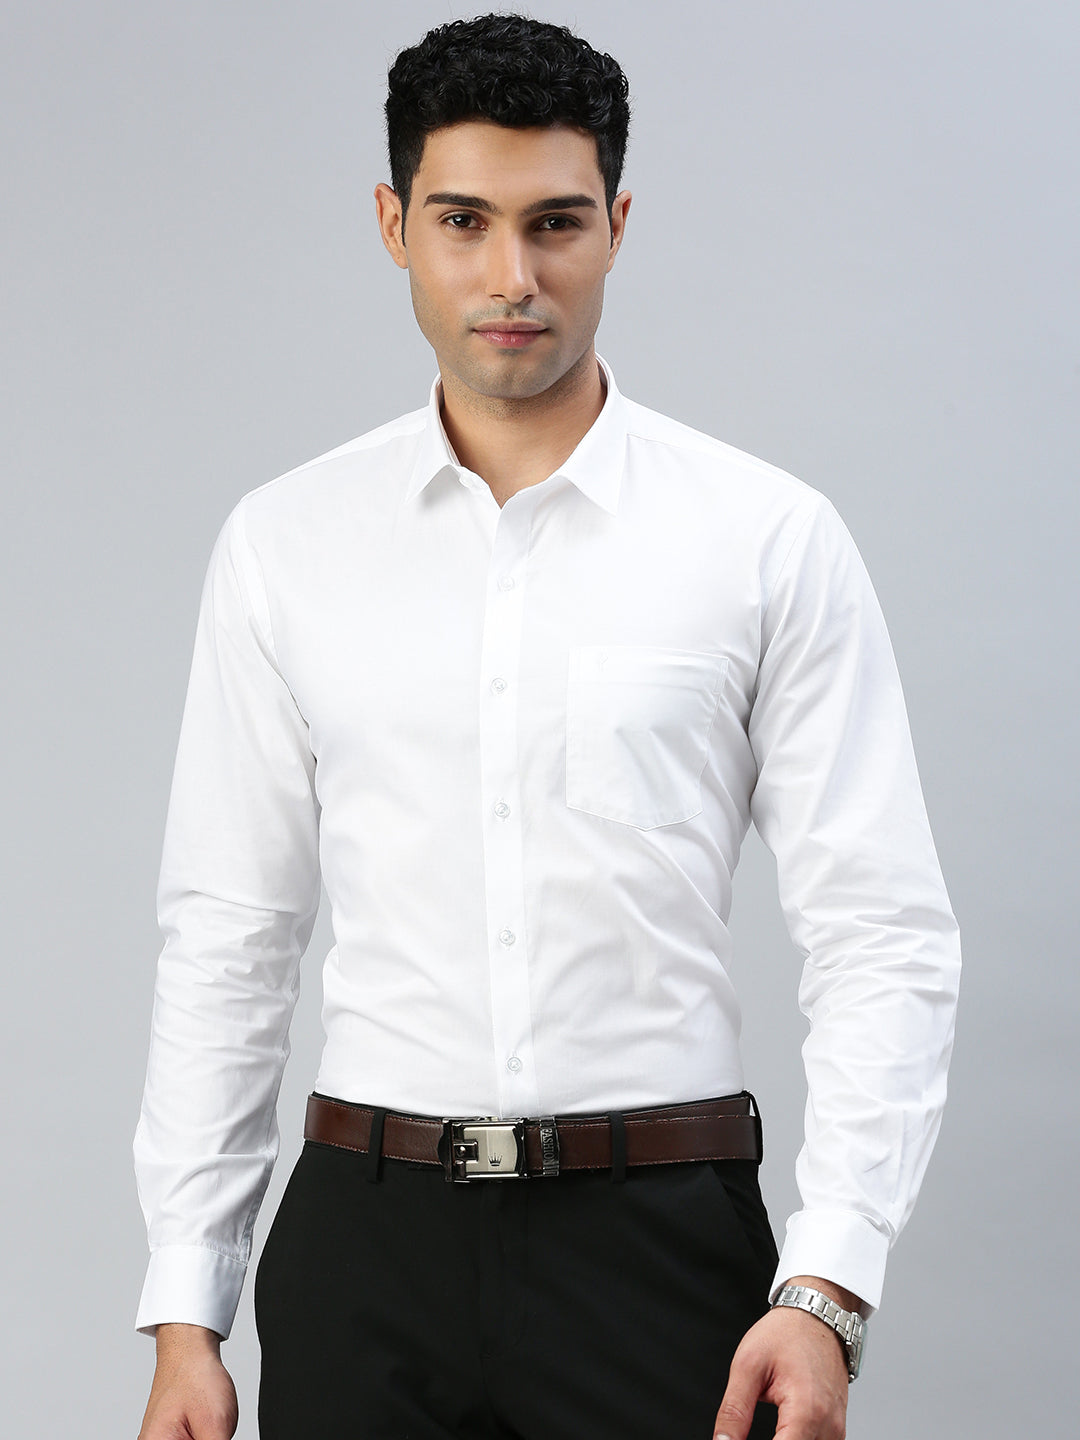 Mens Prestigious Look 100% Cotton White Shirt - Award